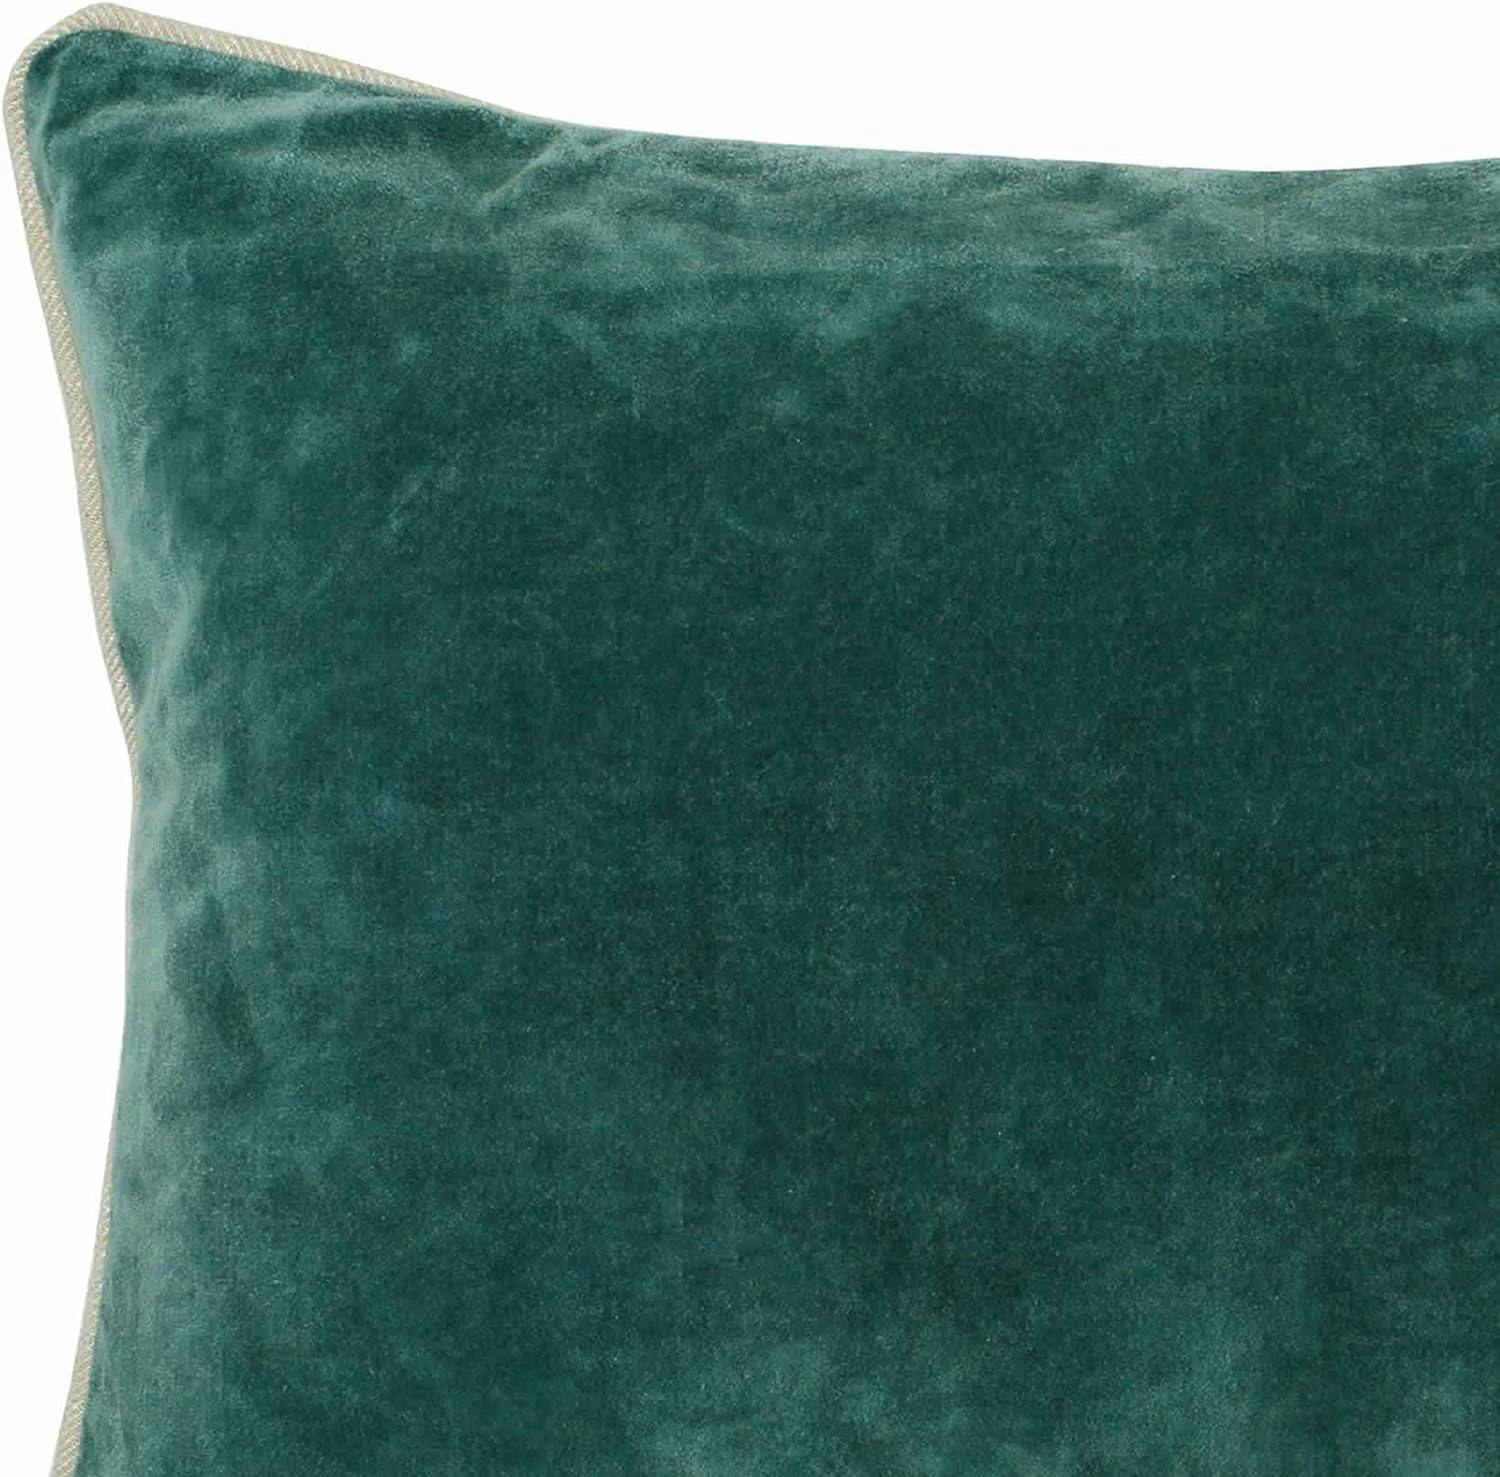 Teal Green Textured Cotton Velvet Rectangular Throw Pillow